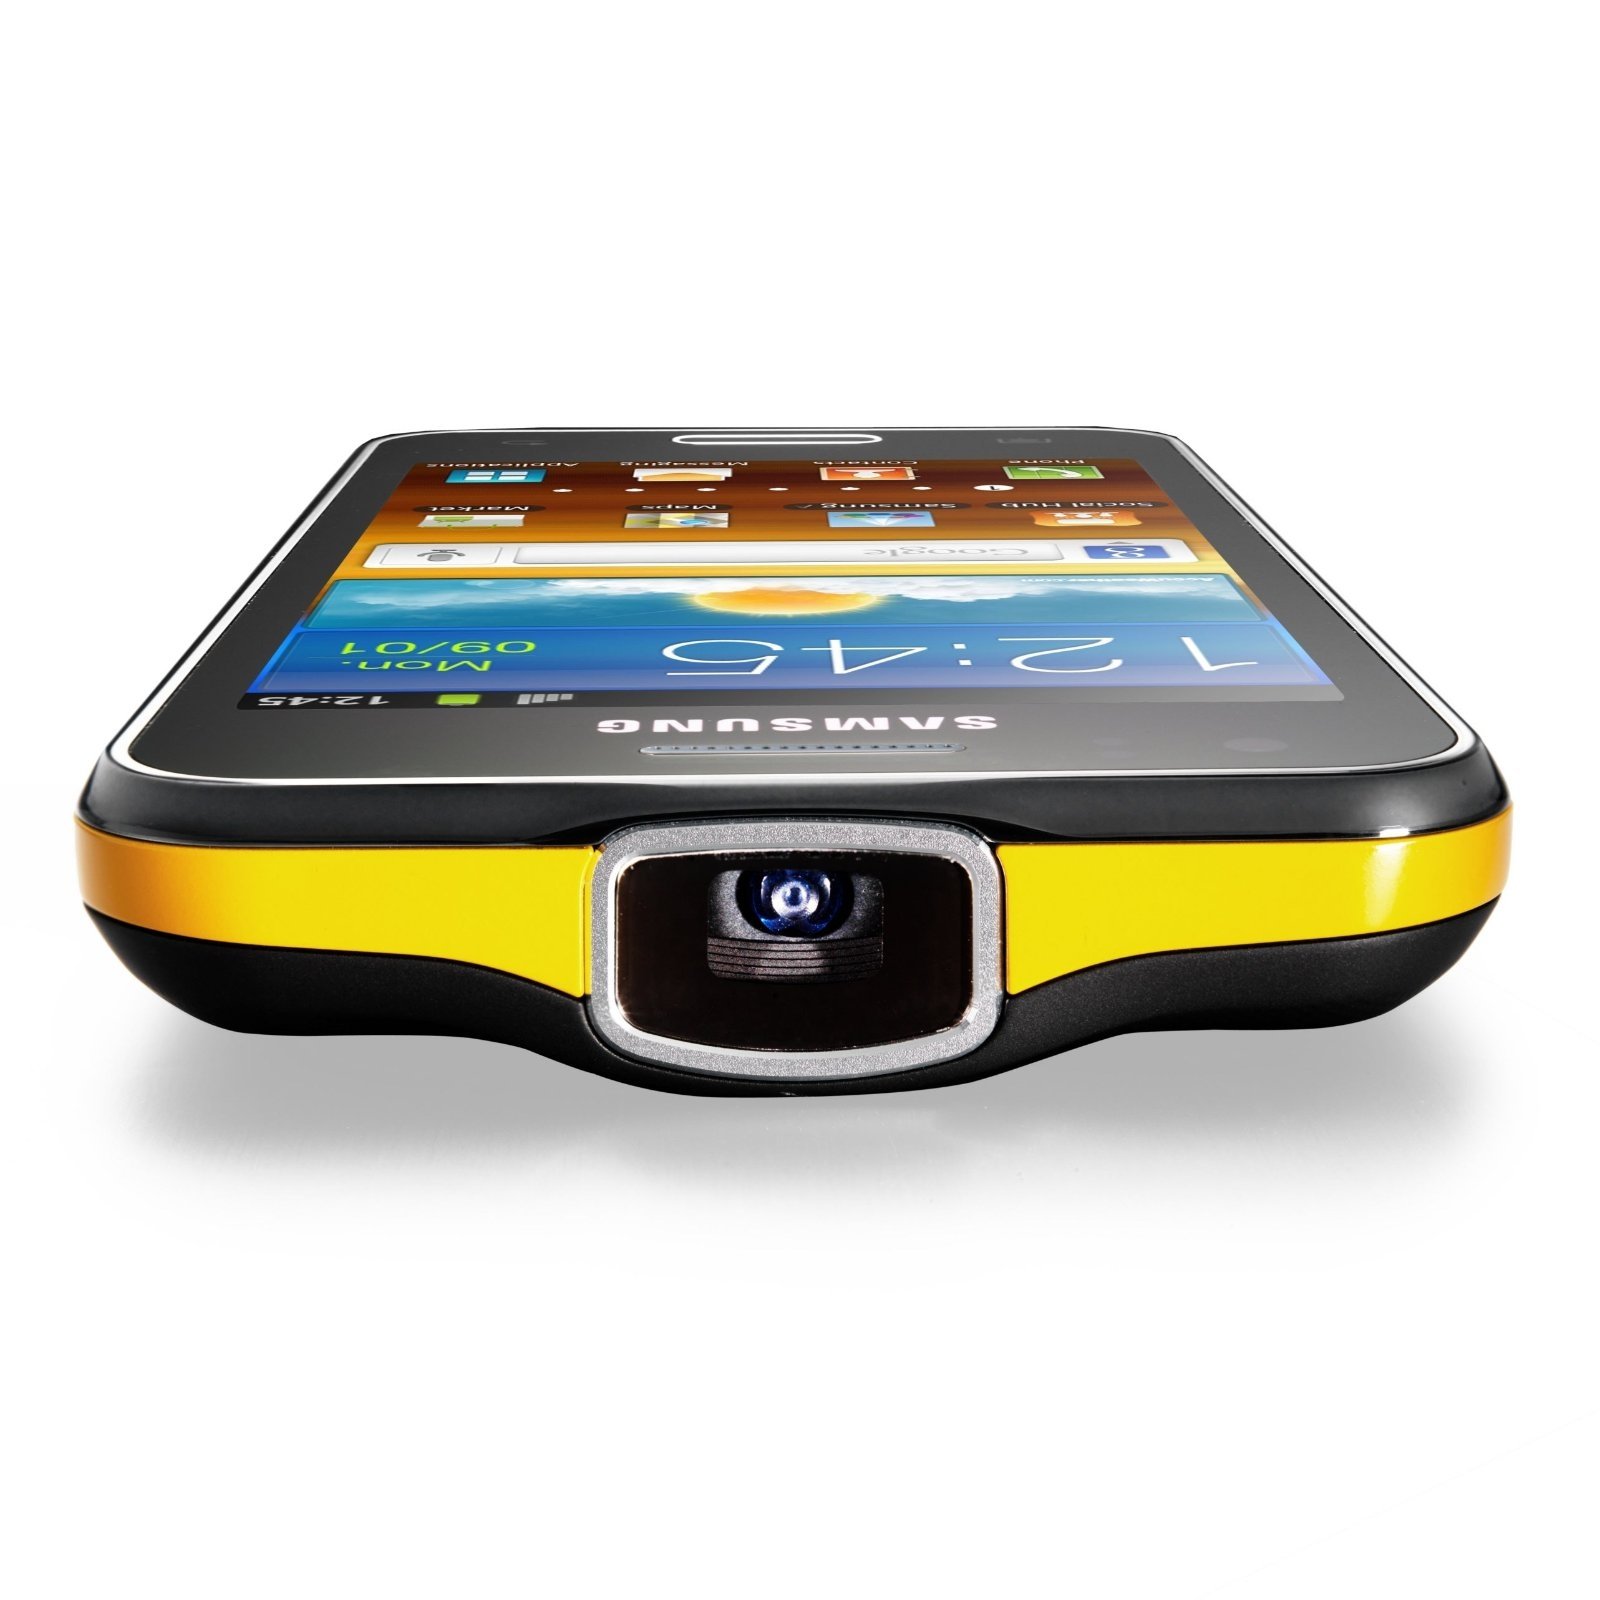 Vista del picoproyector del Samsung Galaxy Beam